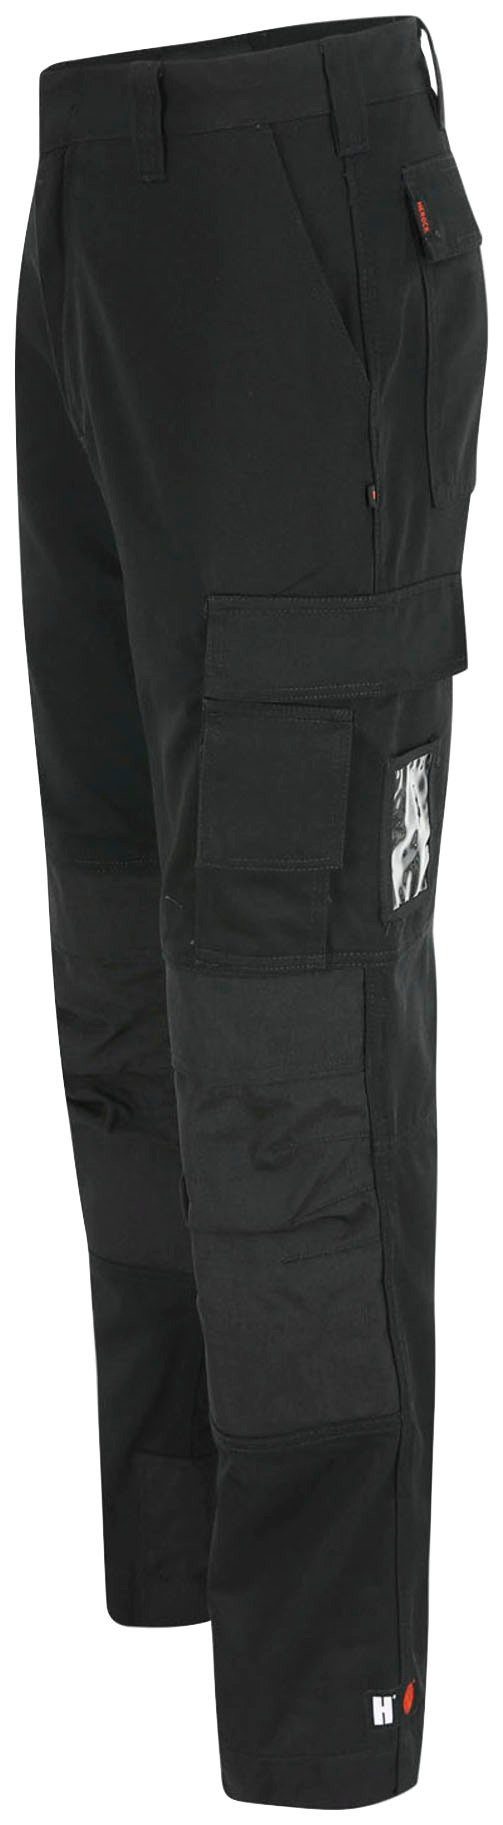 Herock Arbeitshose TITAN HOSE SHORTLEG Taschen, 12 wasserabweisend, schwarz sehr 3-Naht, Kurzgröβe, angenehm